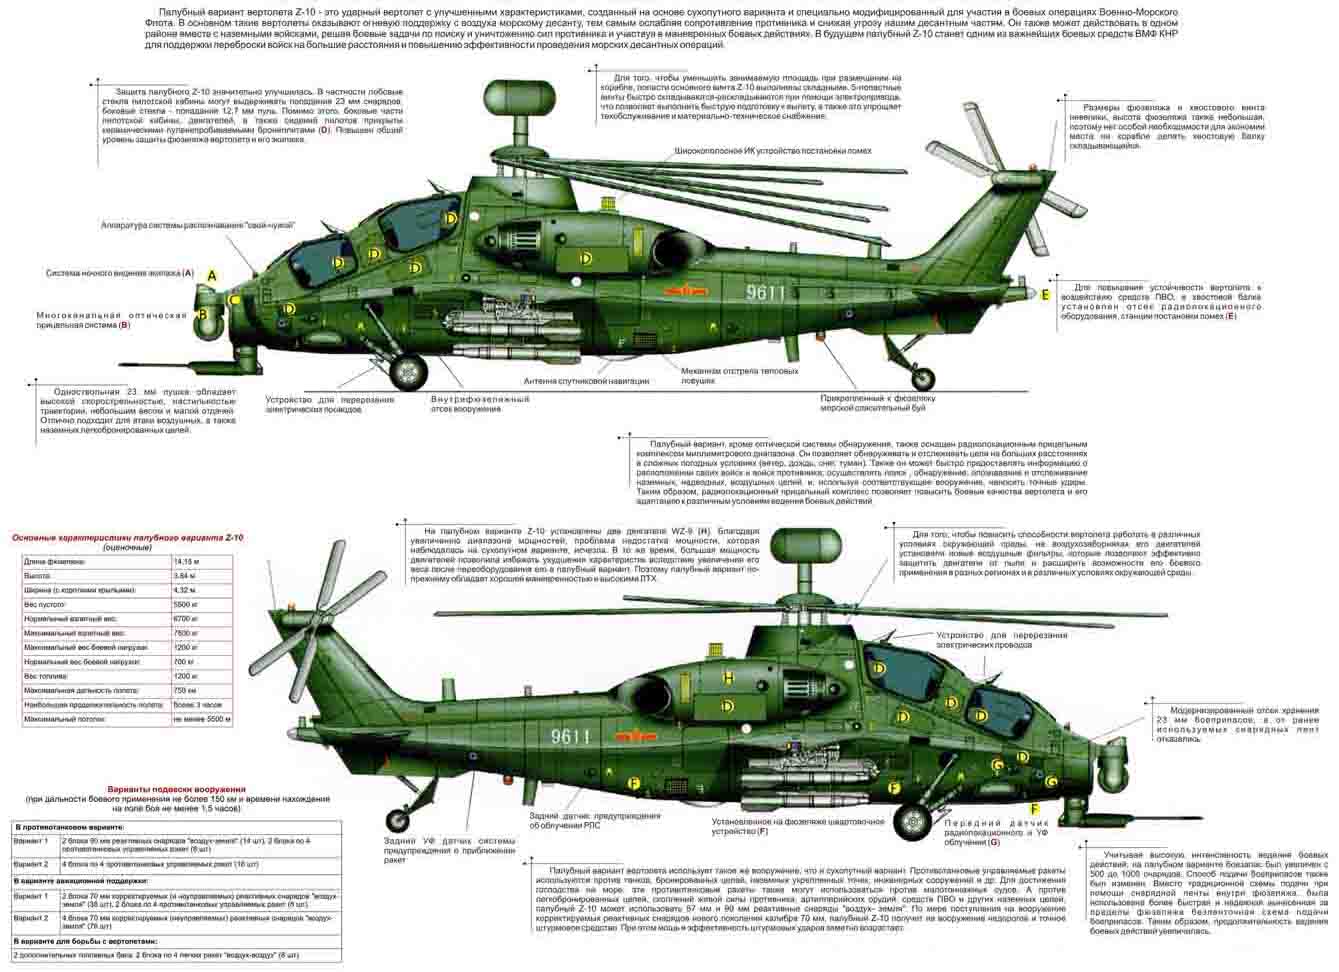 вертолет, инфракрасная сигнатура, малозаметность, Китай, Z-10, ИК-излучение, выхлопные газы